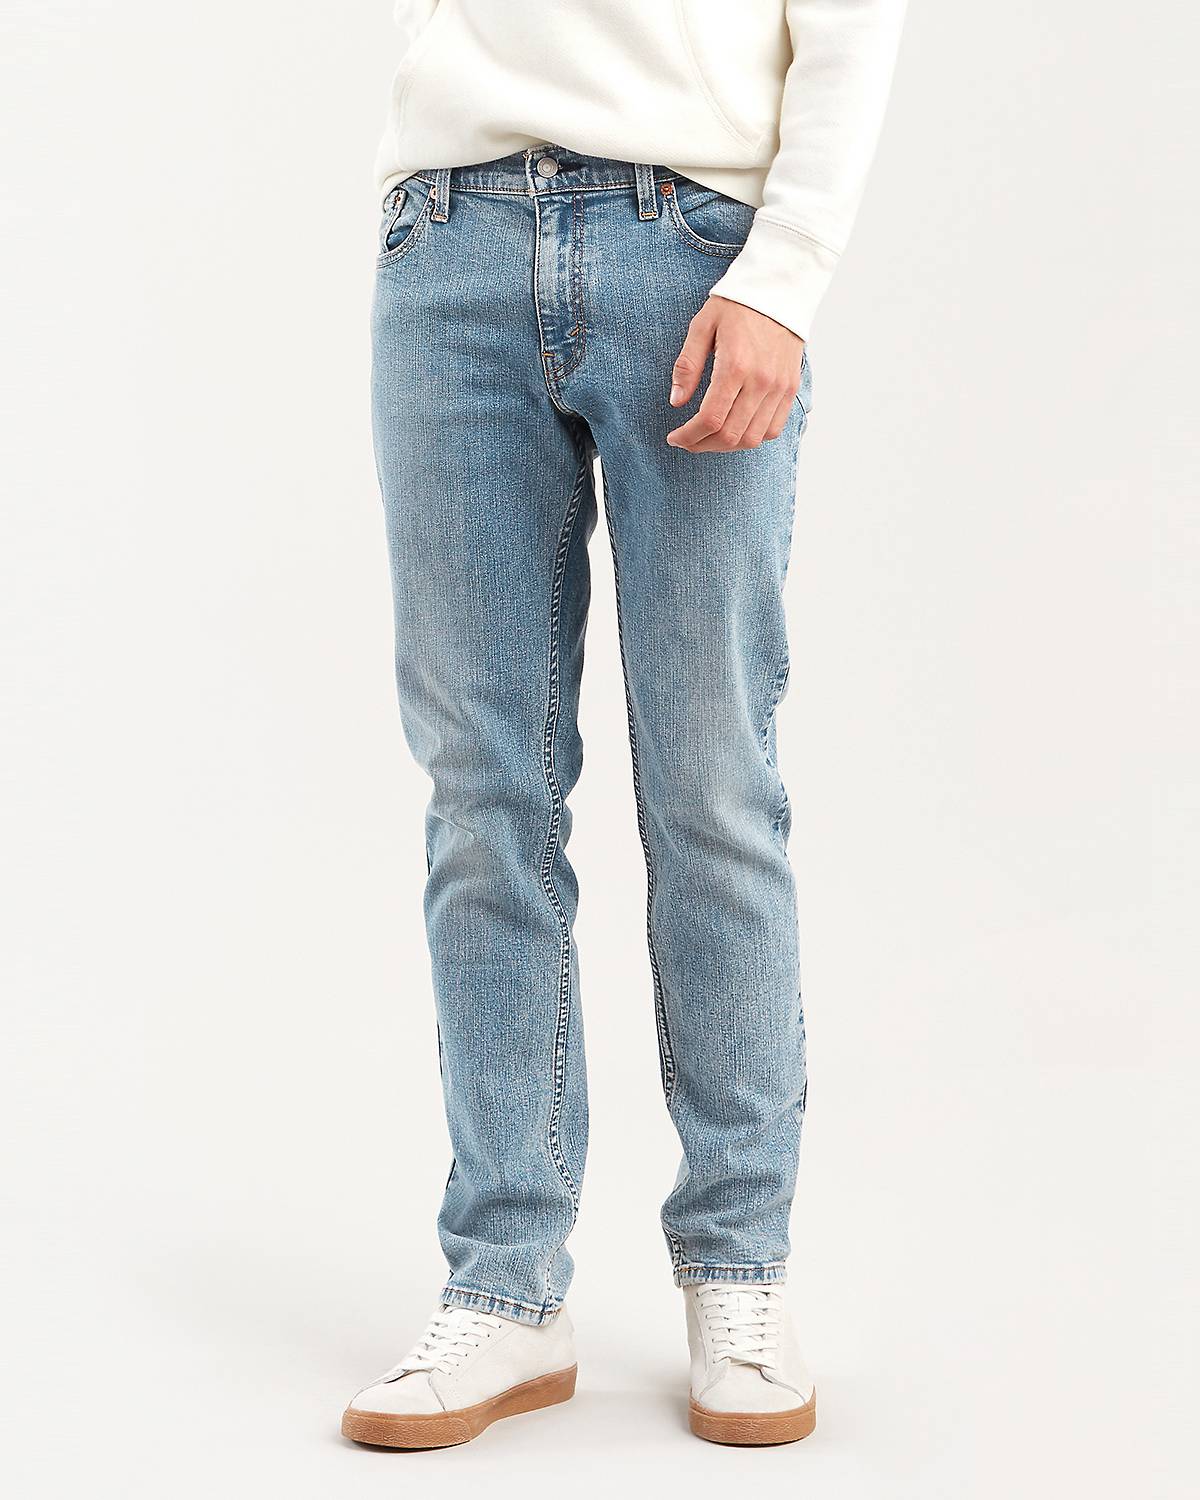 Male model wearing slim fit jeans.